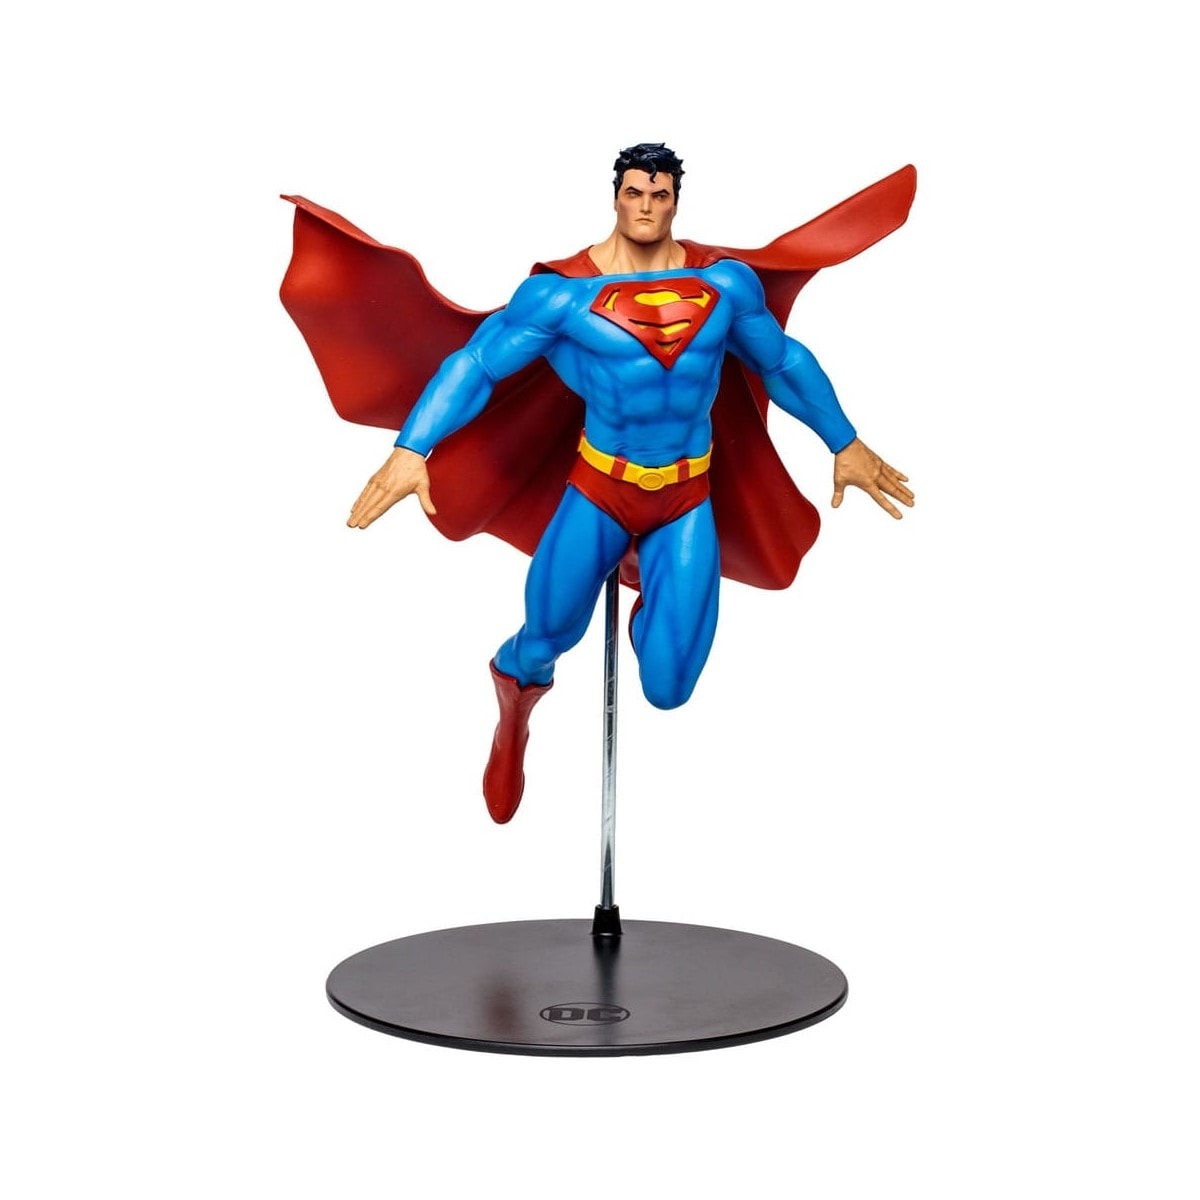 Dc multiverse statuette superman (for tomorrow) 30 cm MC FARLANE